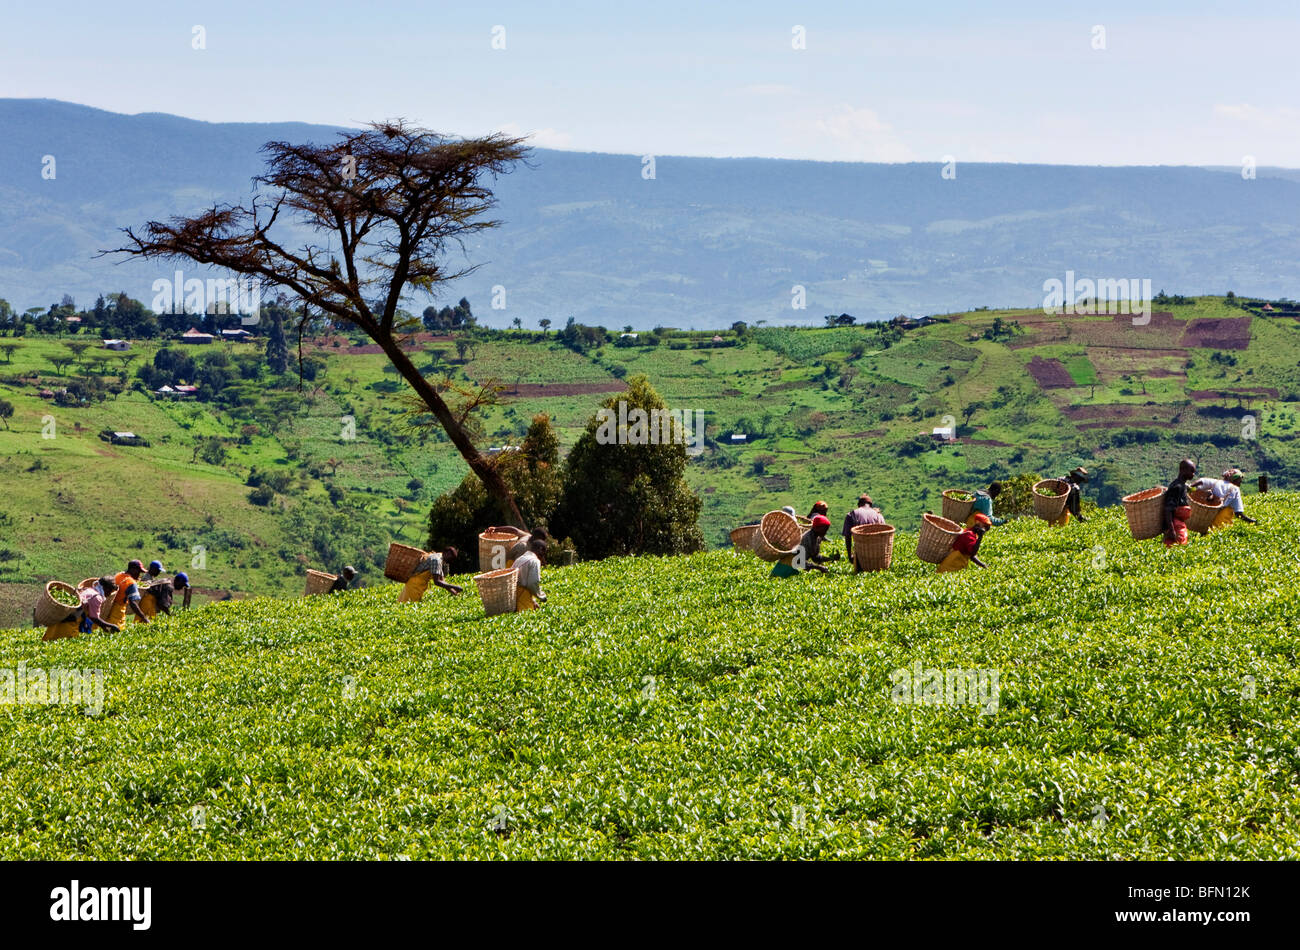 Au Kenya, le District de Kericho. Les cueilleurs de thé cueillir du thé dans l'une des plus importantes régions de culture du thé du Kenya. Banque D'Images